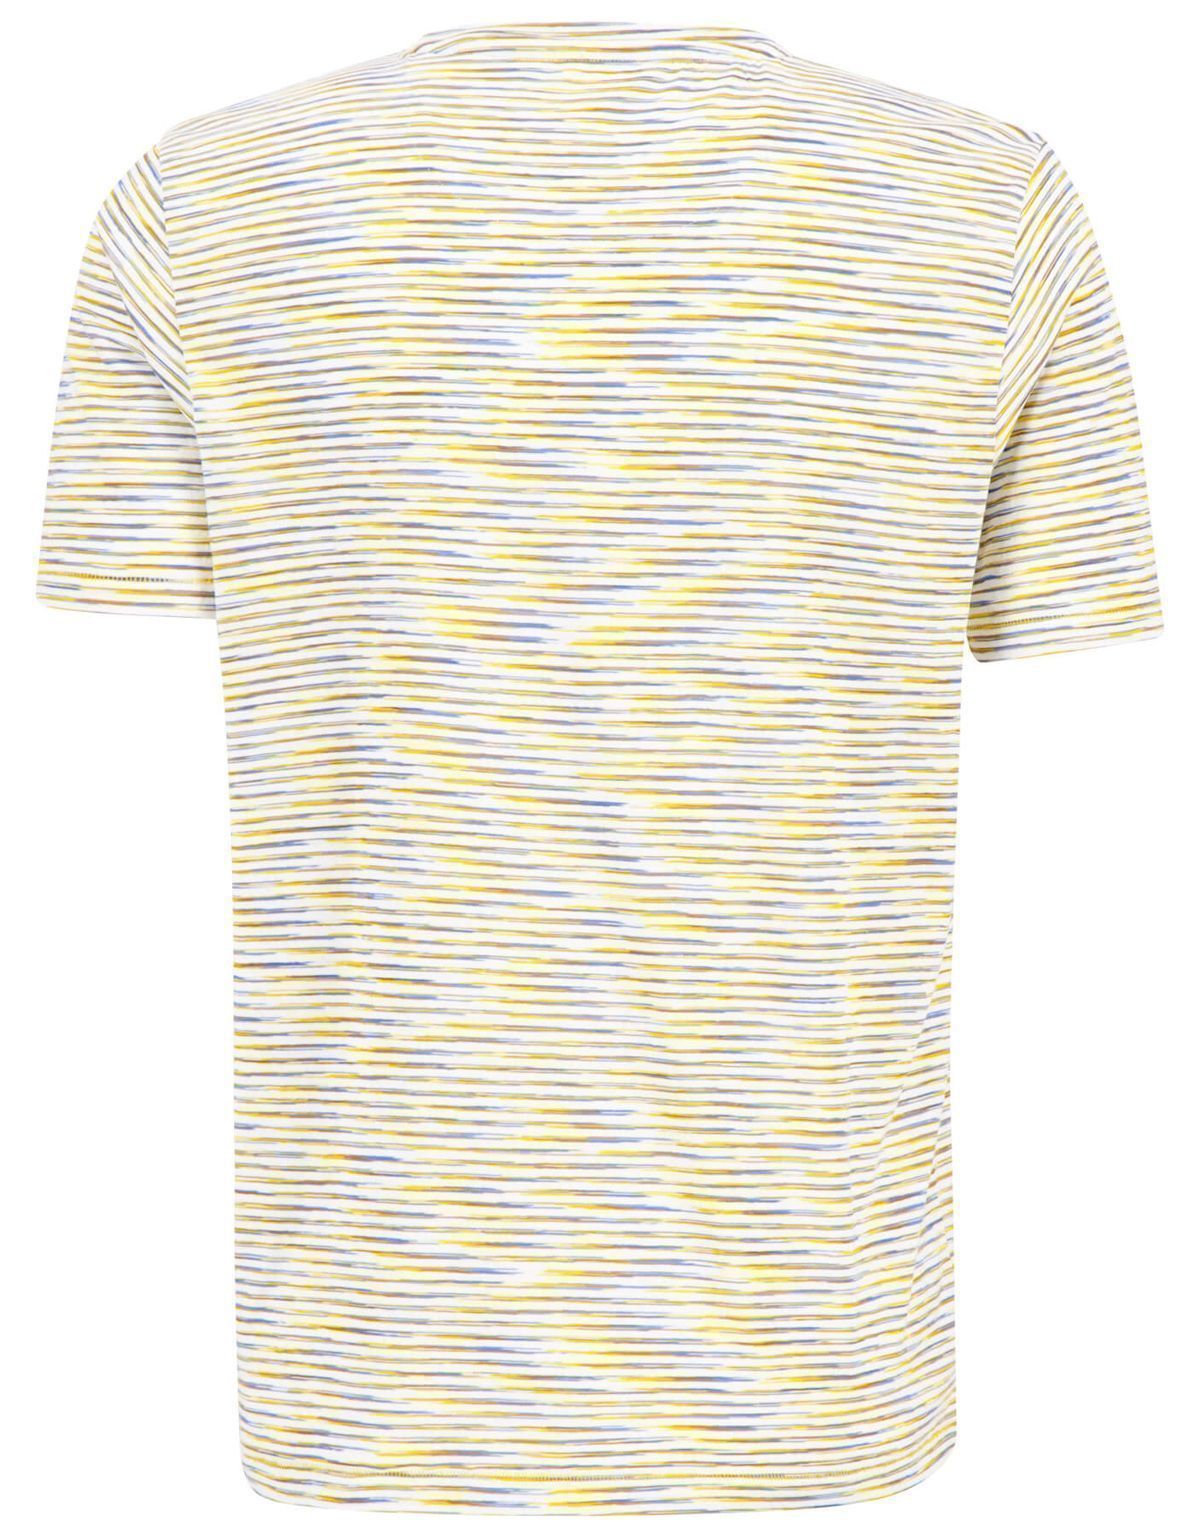 Футболка мужская в жёлтую полоску Fynch-Hatton | купить в интернет-магазине Olymp-Men